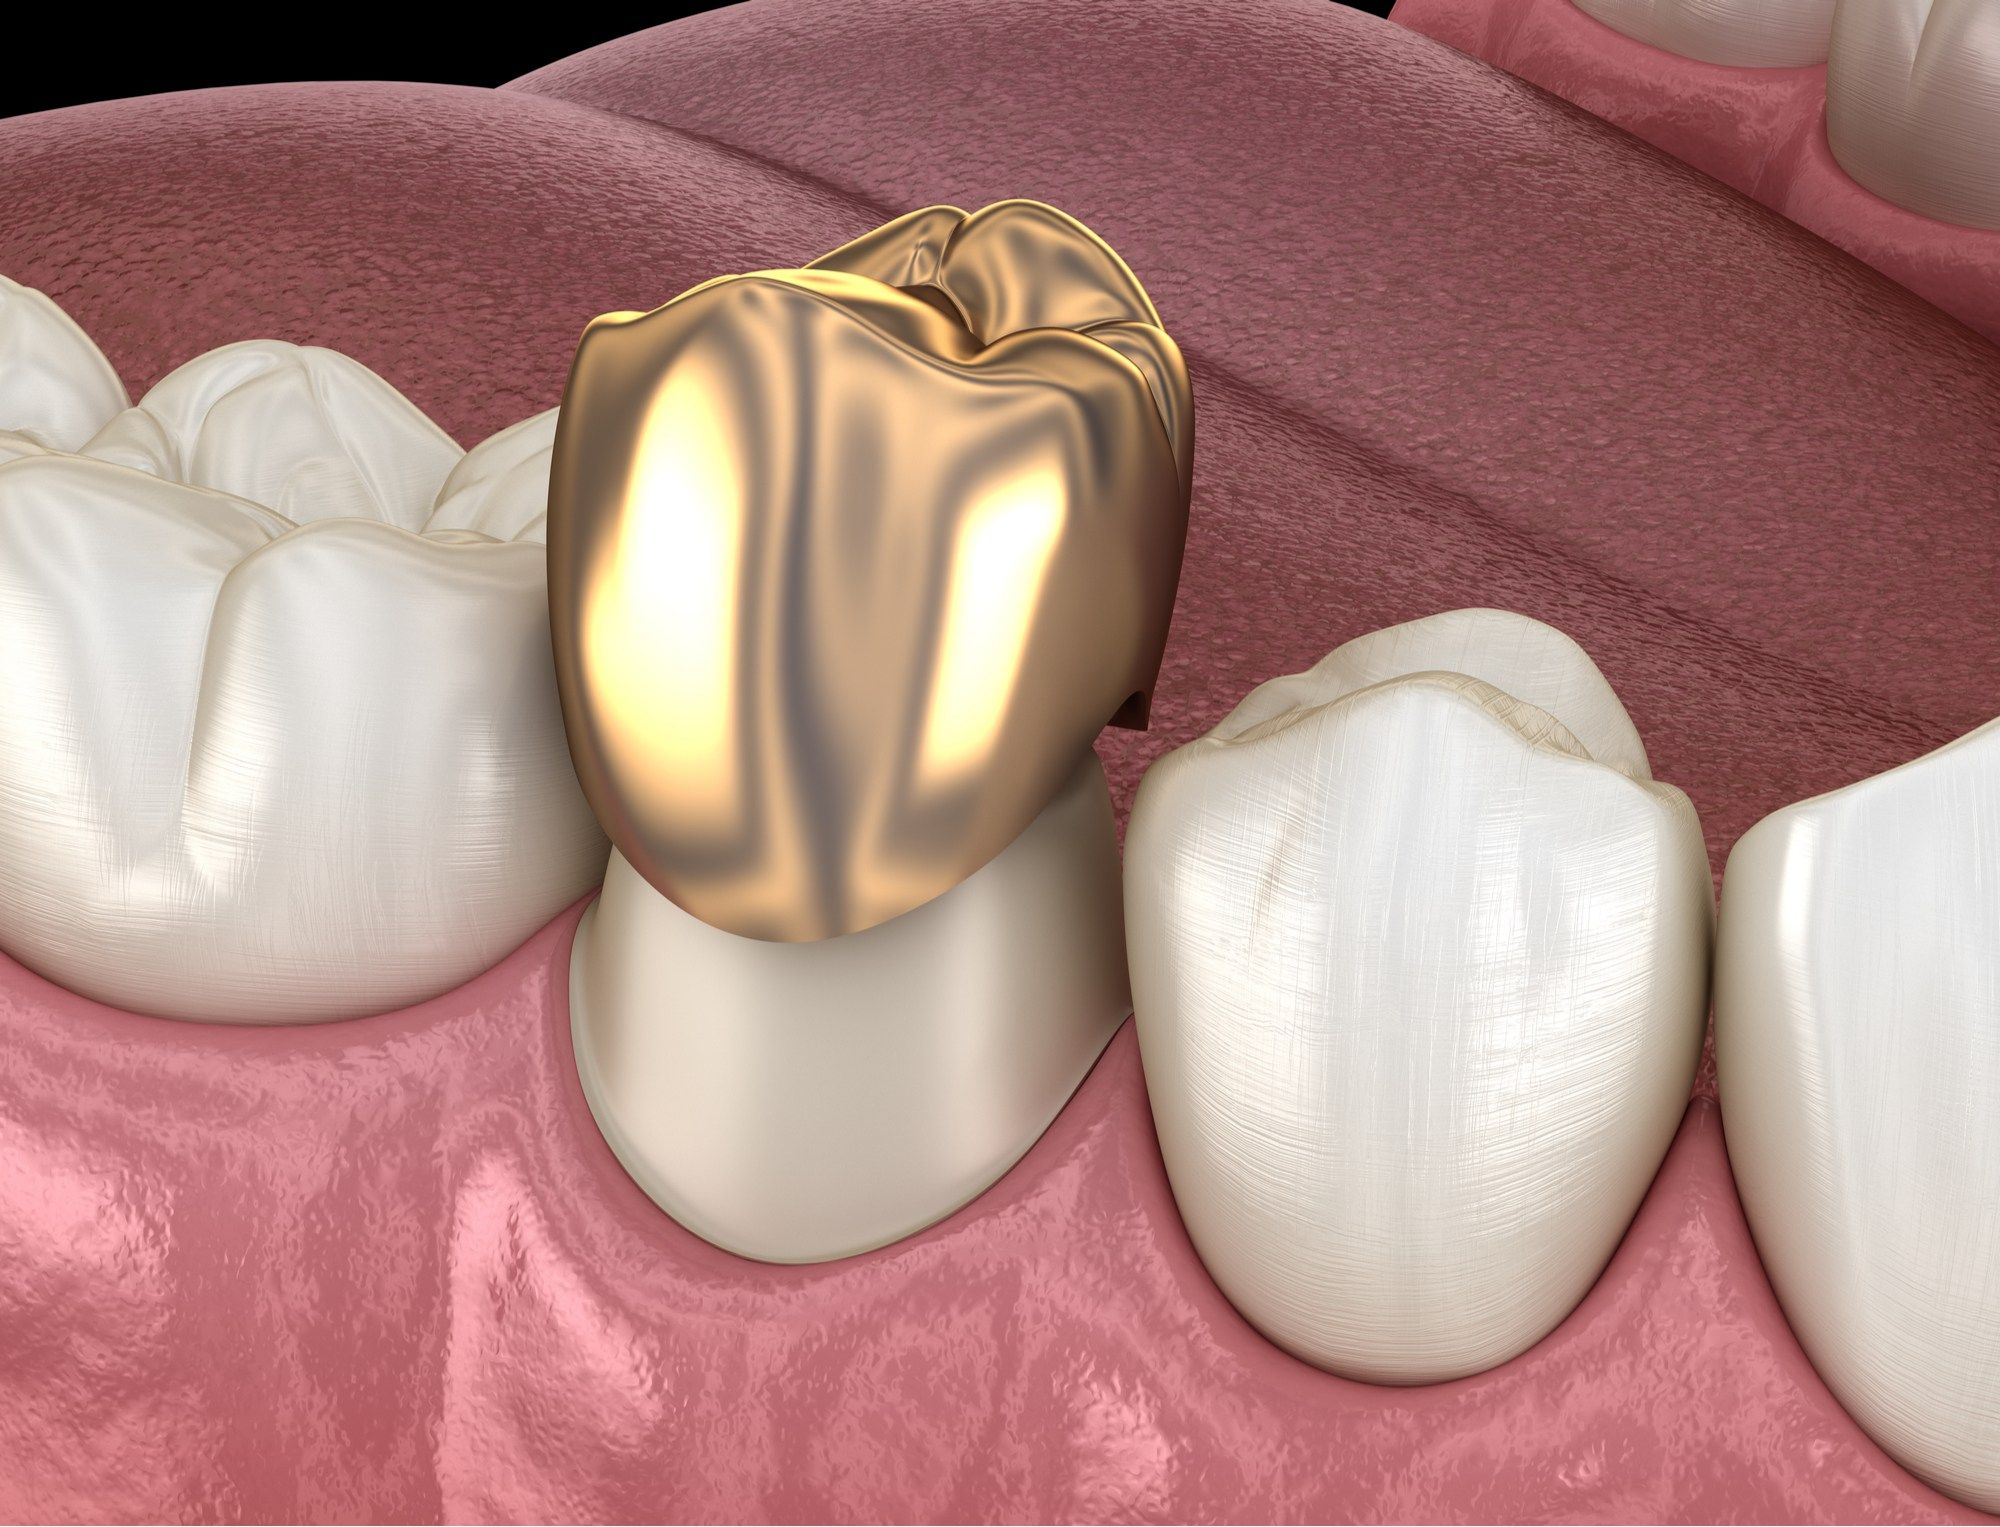 ما هي أهم أنواع تركيبات الأسنان؟